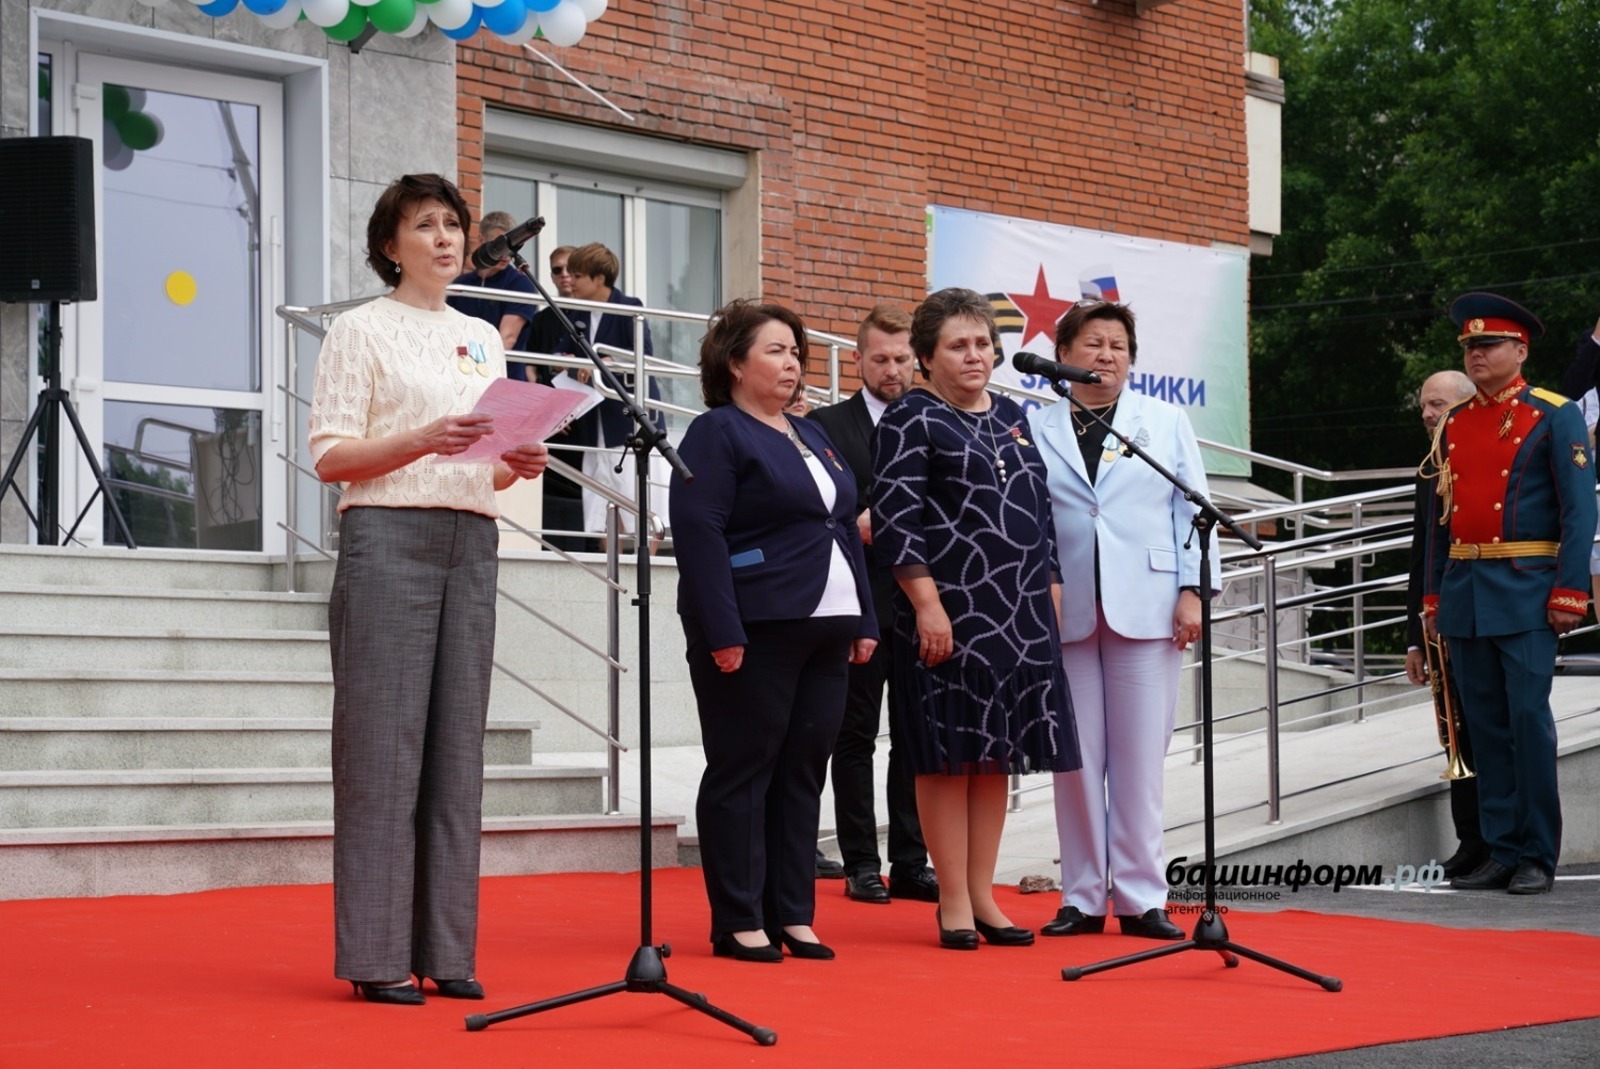 В Башкирии открылся региональный филиал фонда «Защитники Отечества»